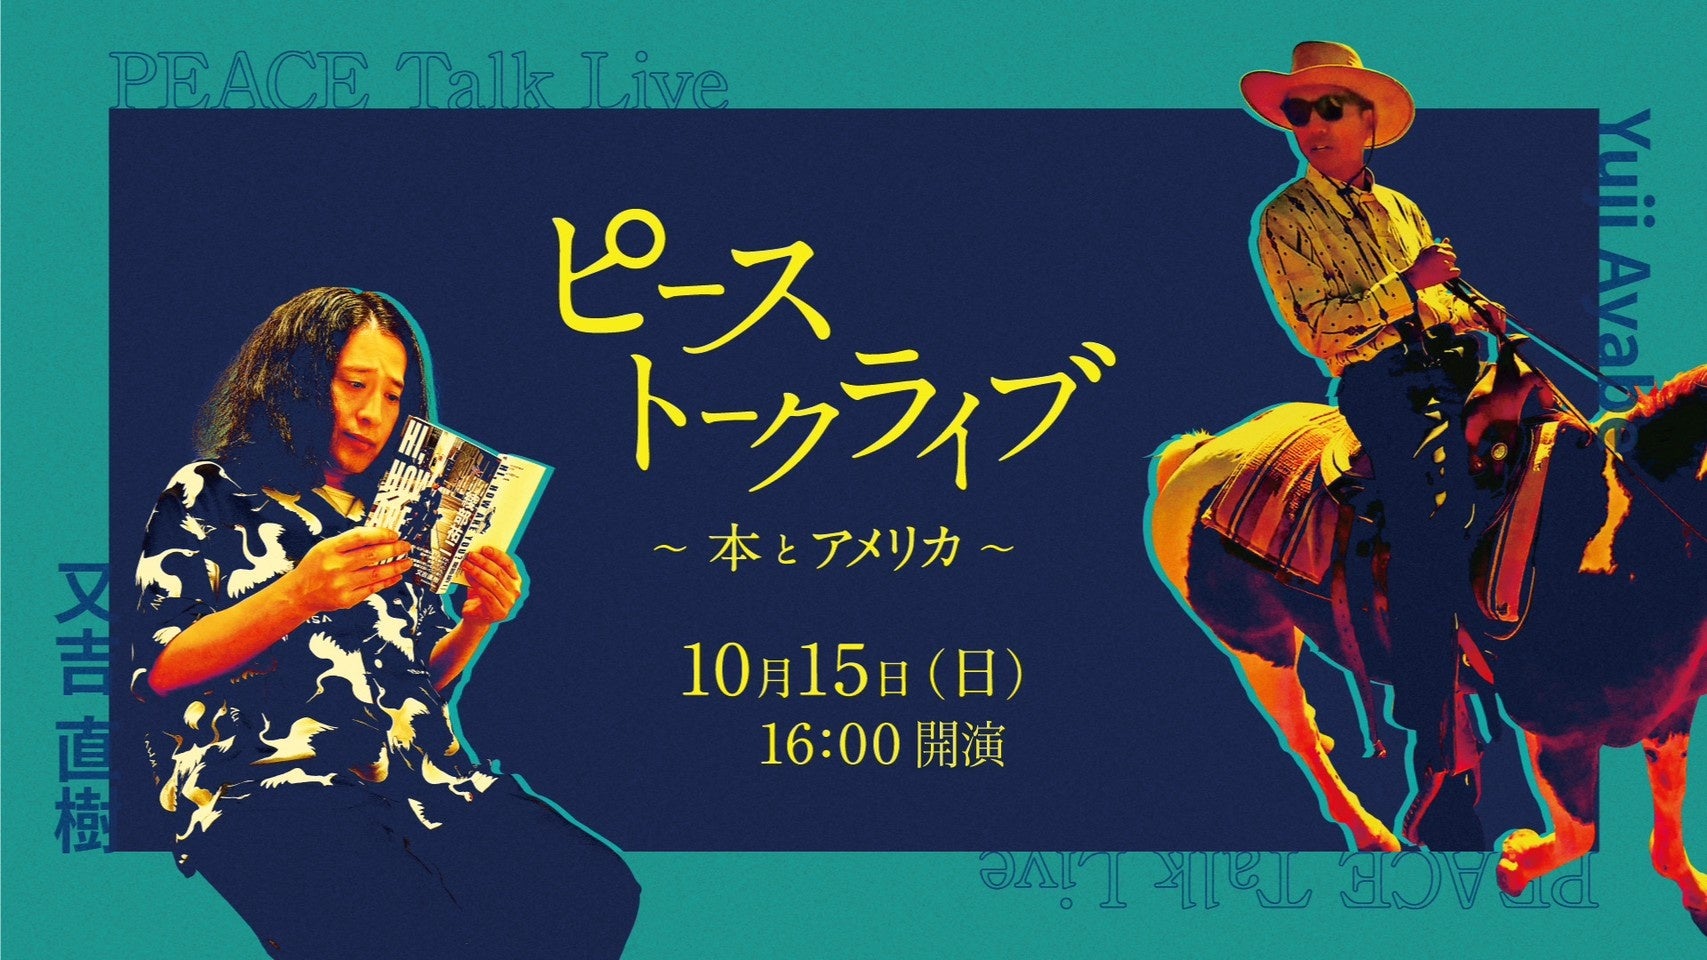 かなまら祭で知られる神奈川県 若宮八幡宮にて
日本発のNewクラブカルチャーイベントを9月24日に開催